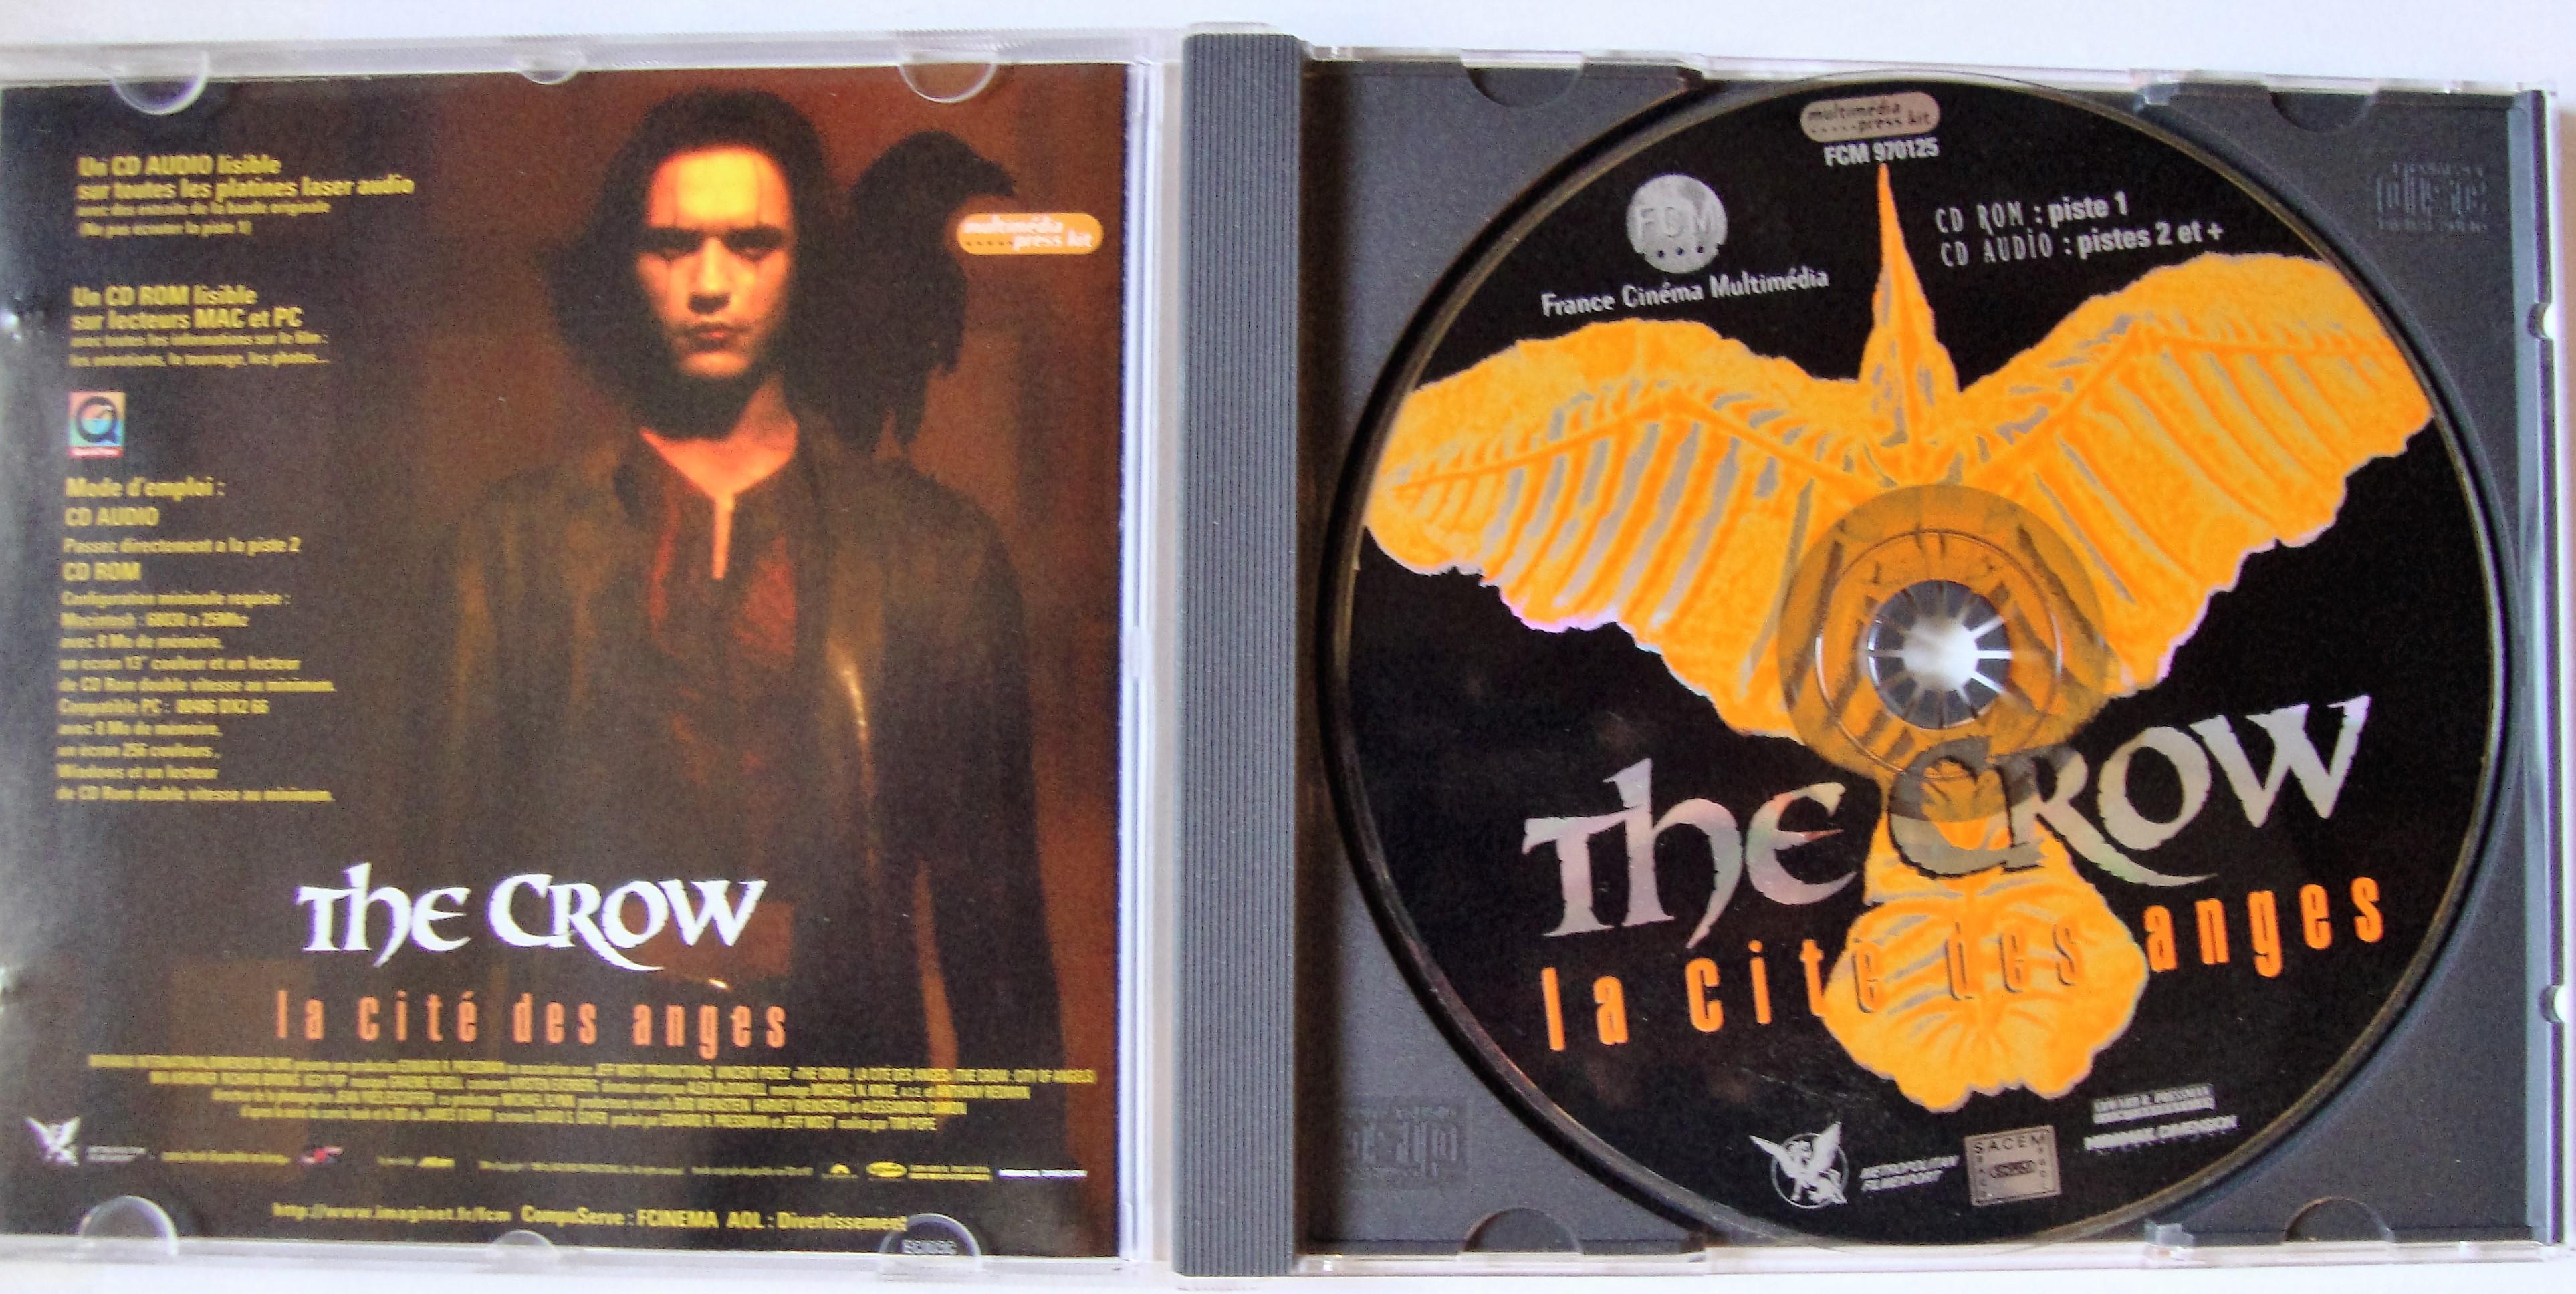 troc de troc cd rom - audio " the crow " vincent perez image 1